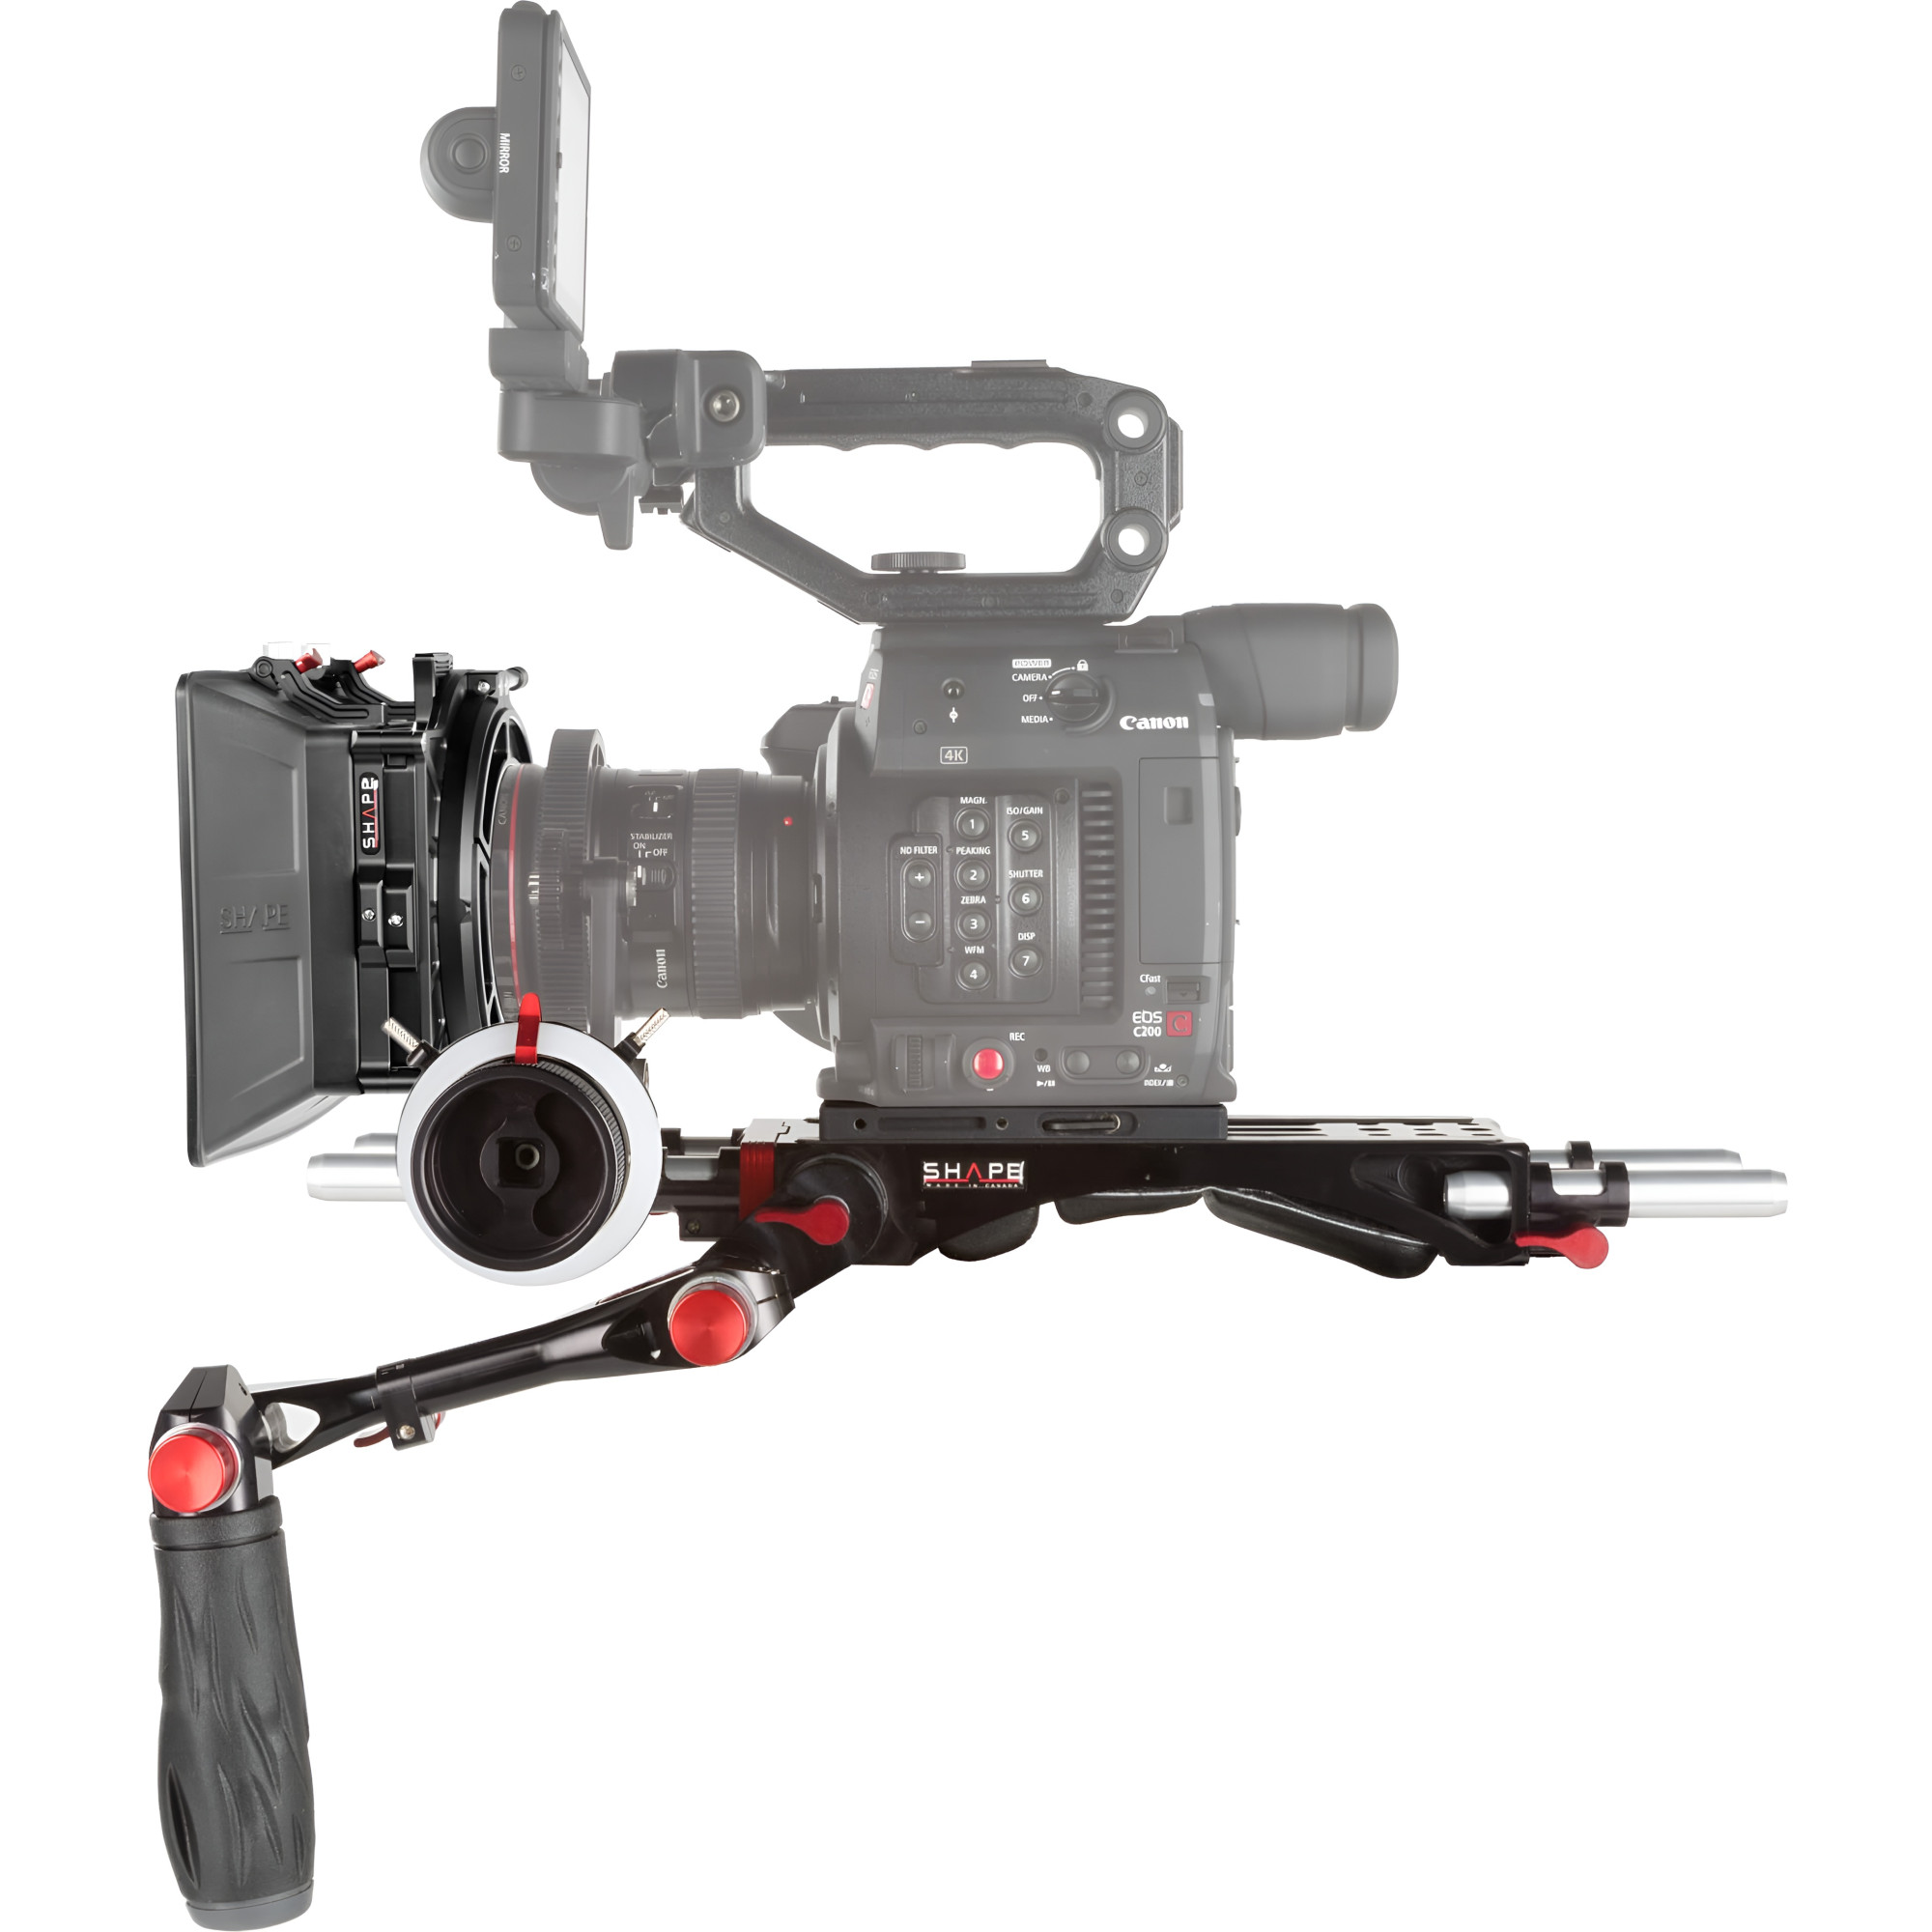 SHAPE Canon C200, C200B Kit C2KIT | Crosse d’épaule, Matte Box et Follow Focus